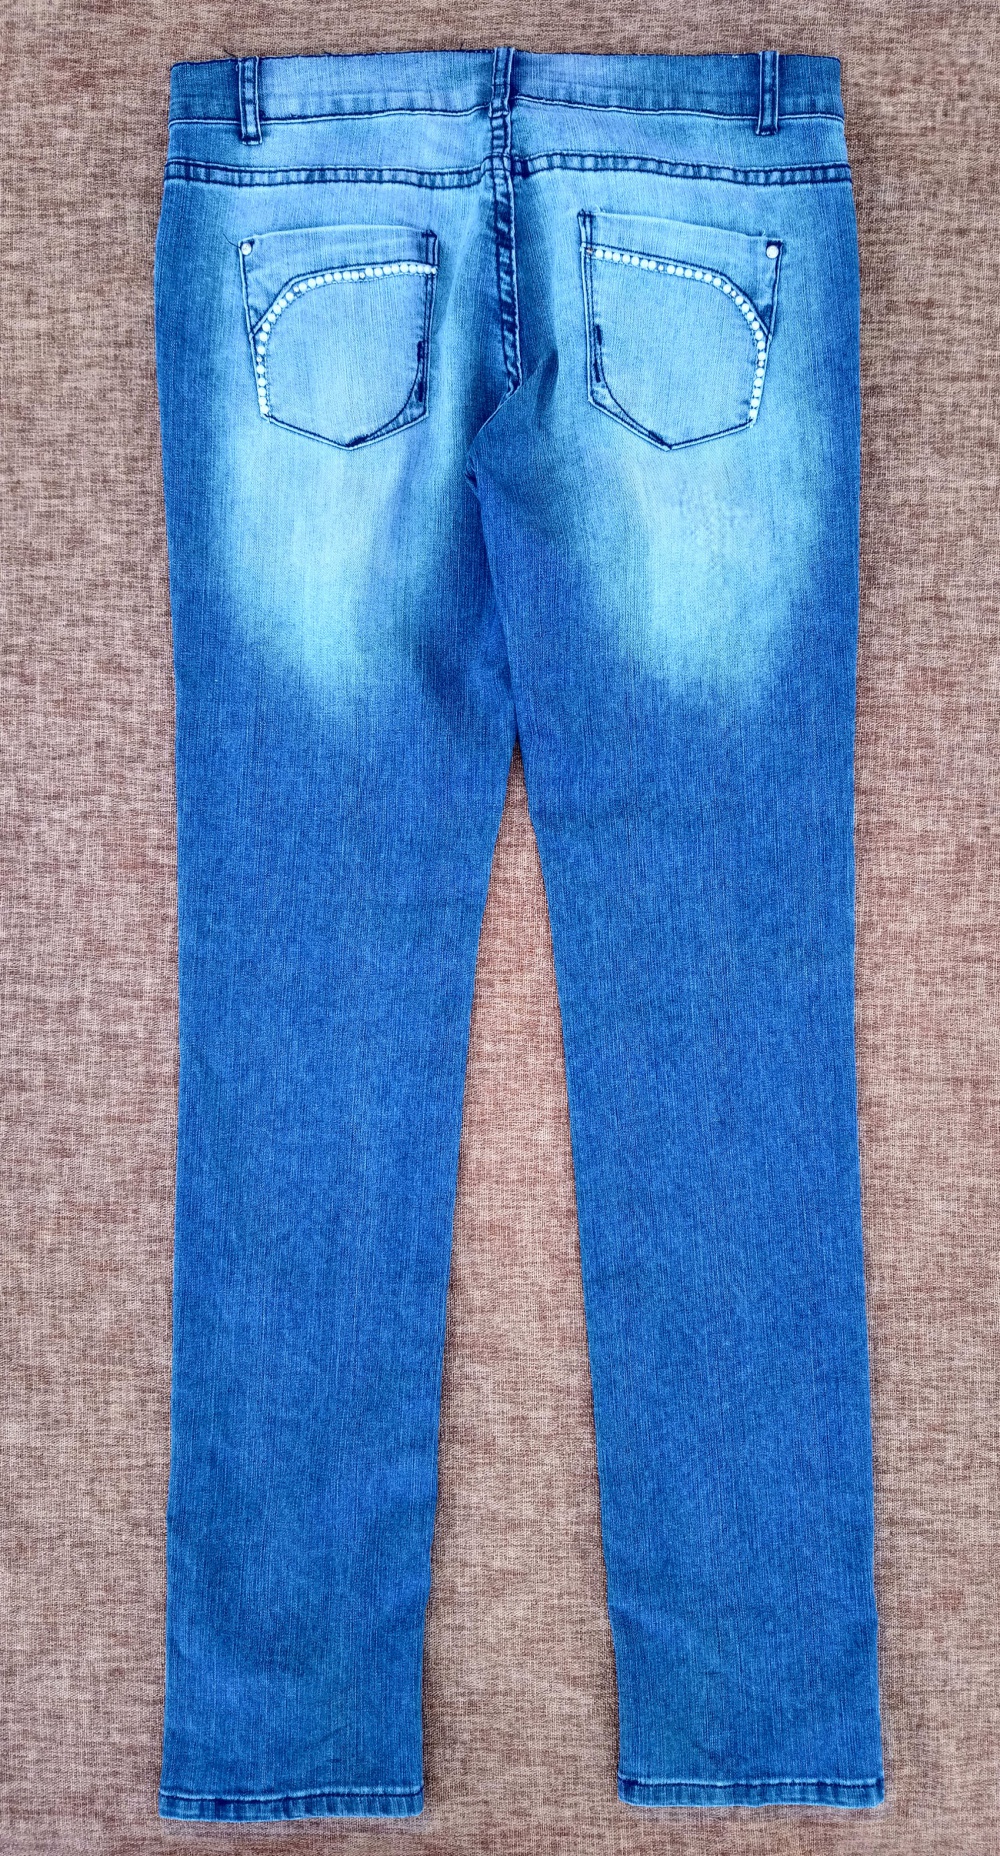 Комплект: джинсы и джемпер Valentino, 46